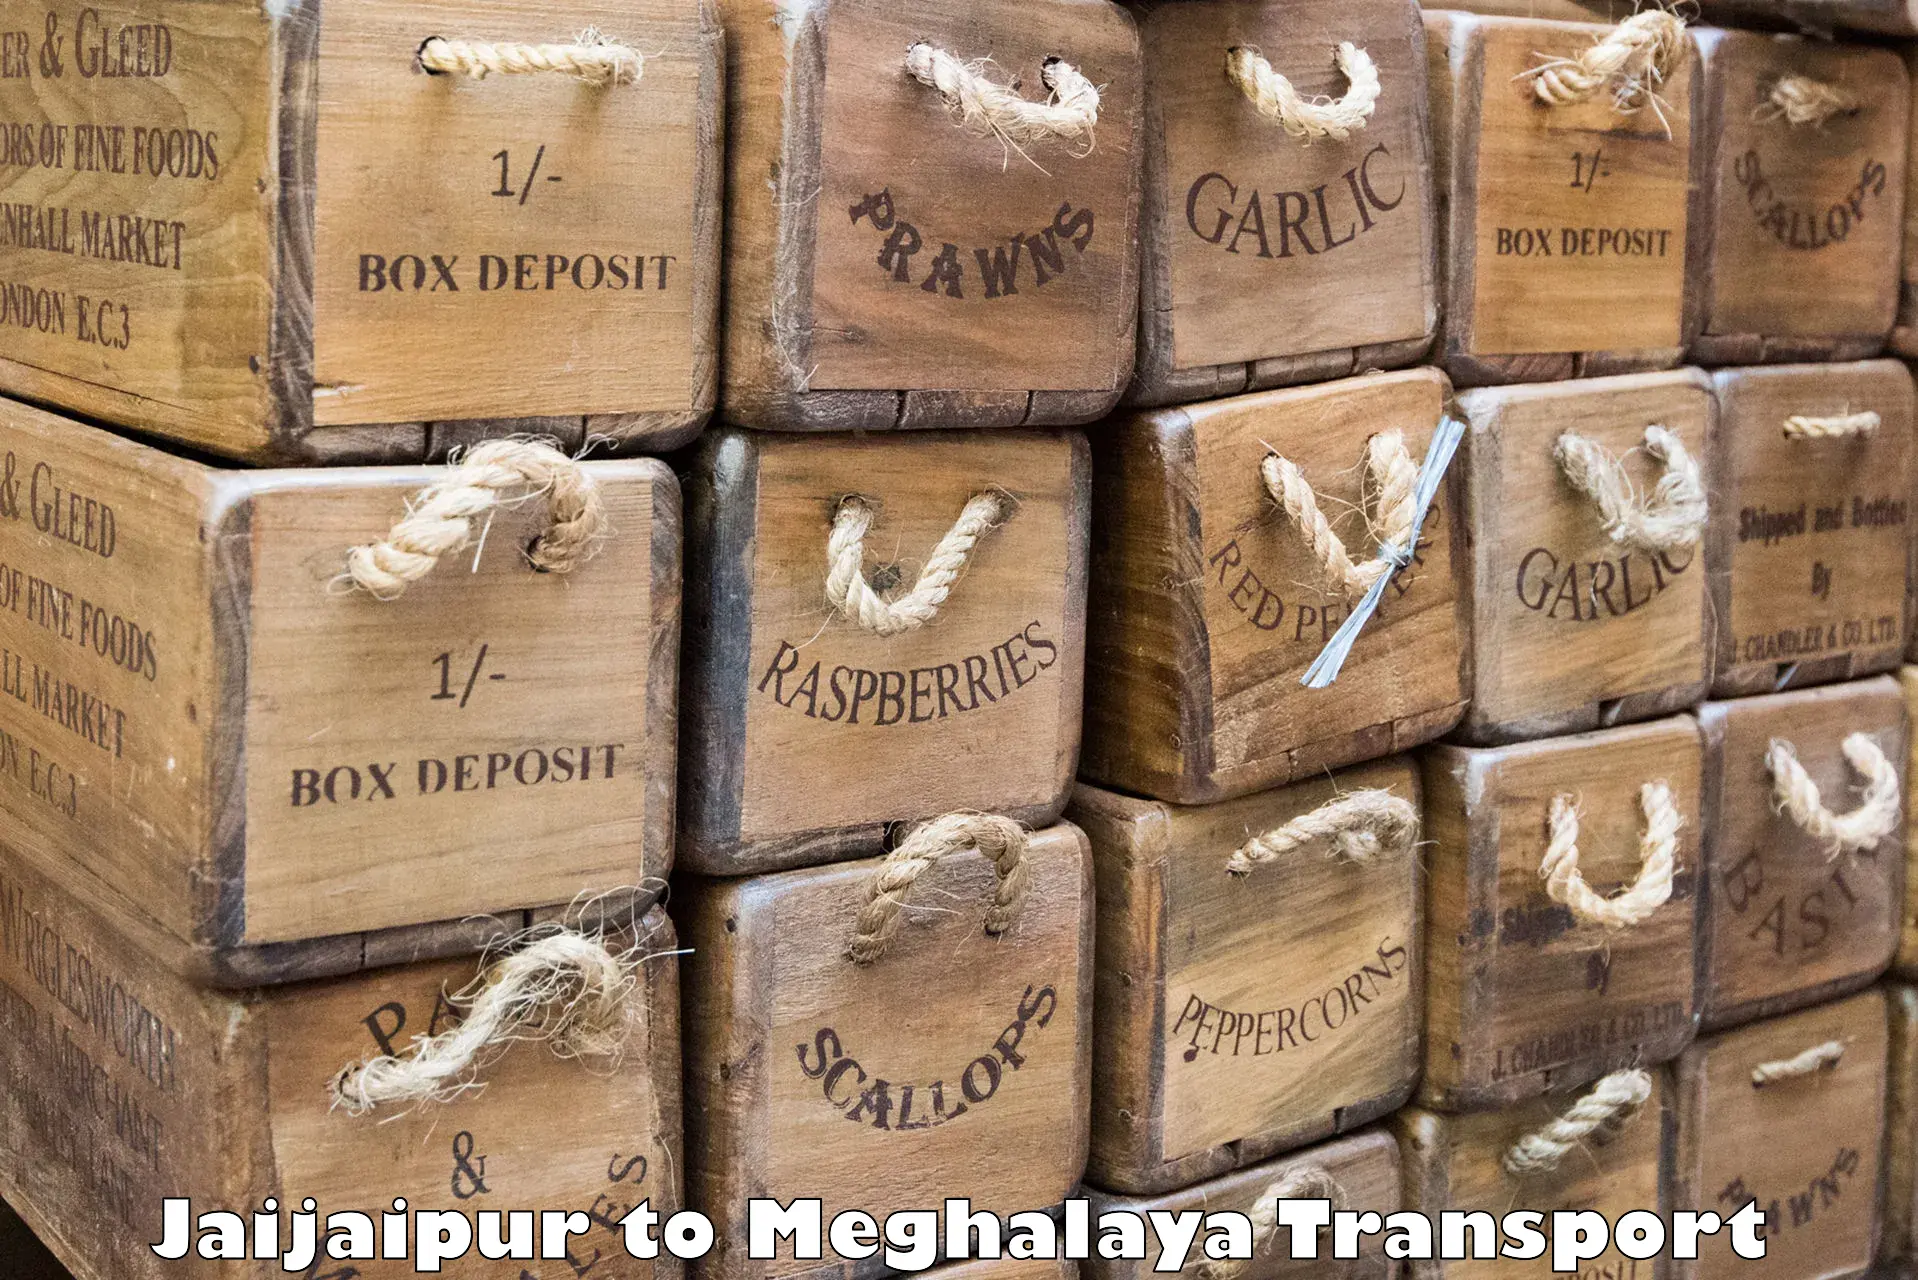 Nationwide transport services Jaijaipur to NIT Meghalaya